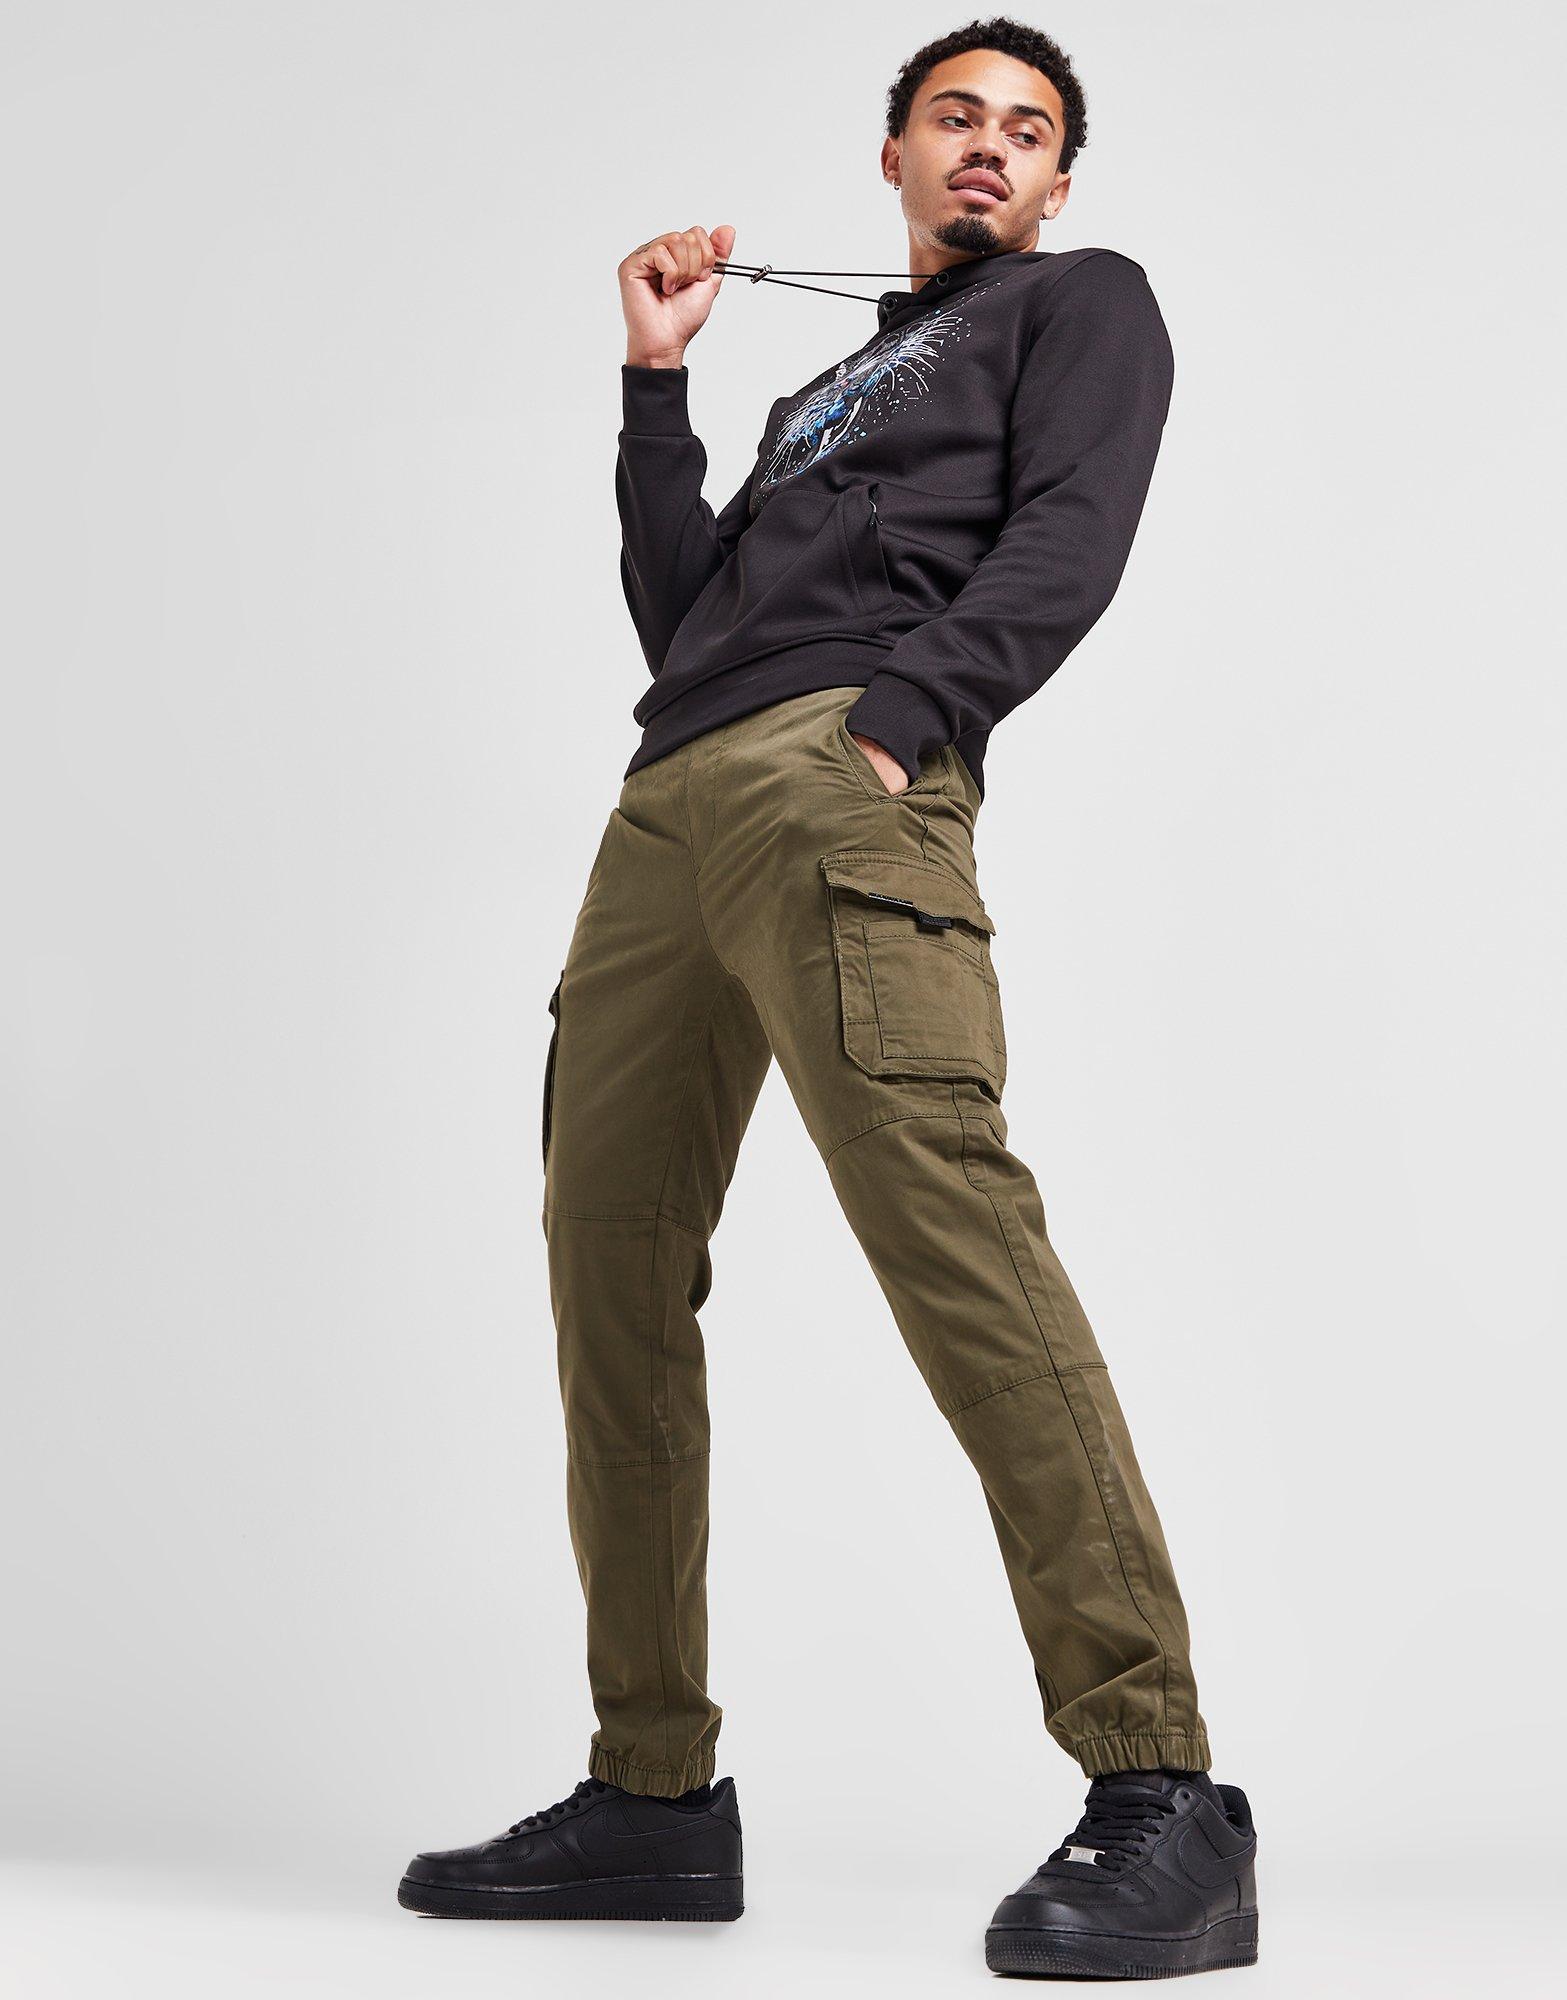 Pantaloni cargo donna: le proposte army style per i tuoi look